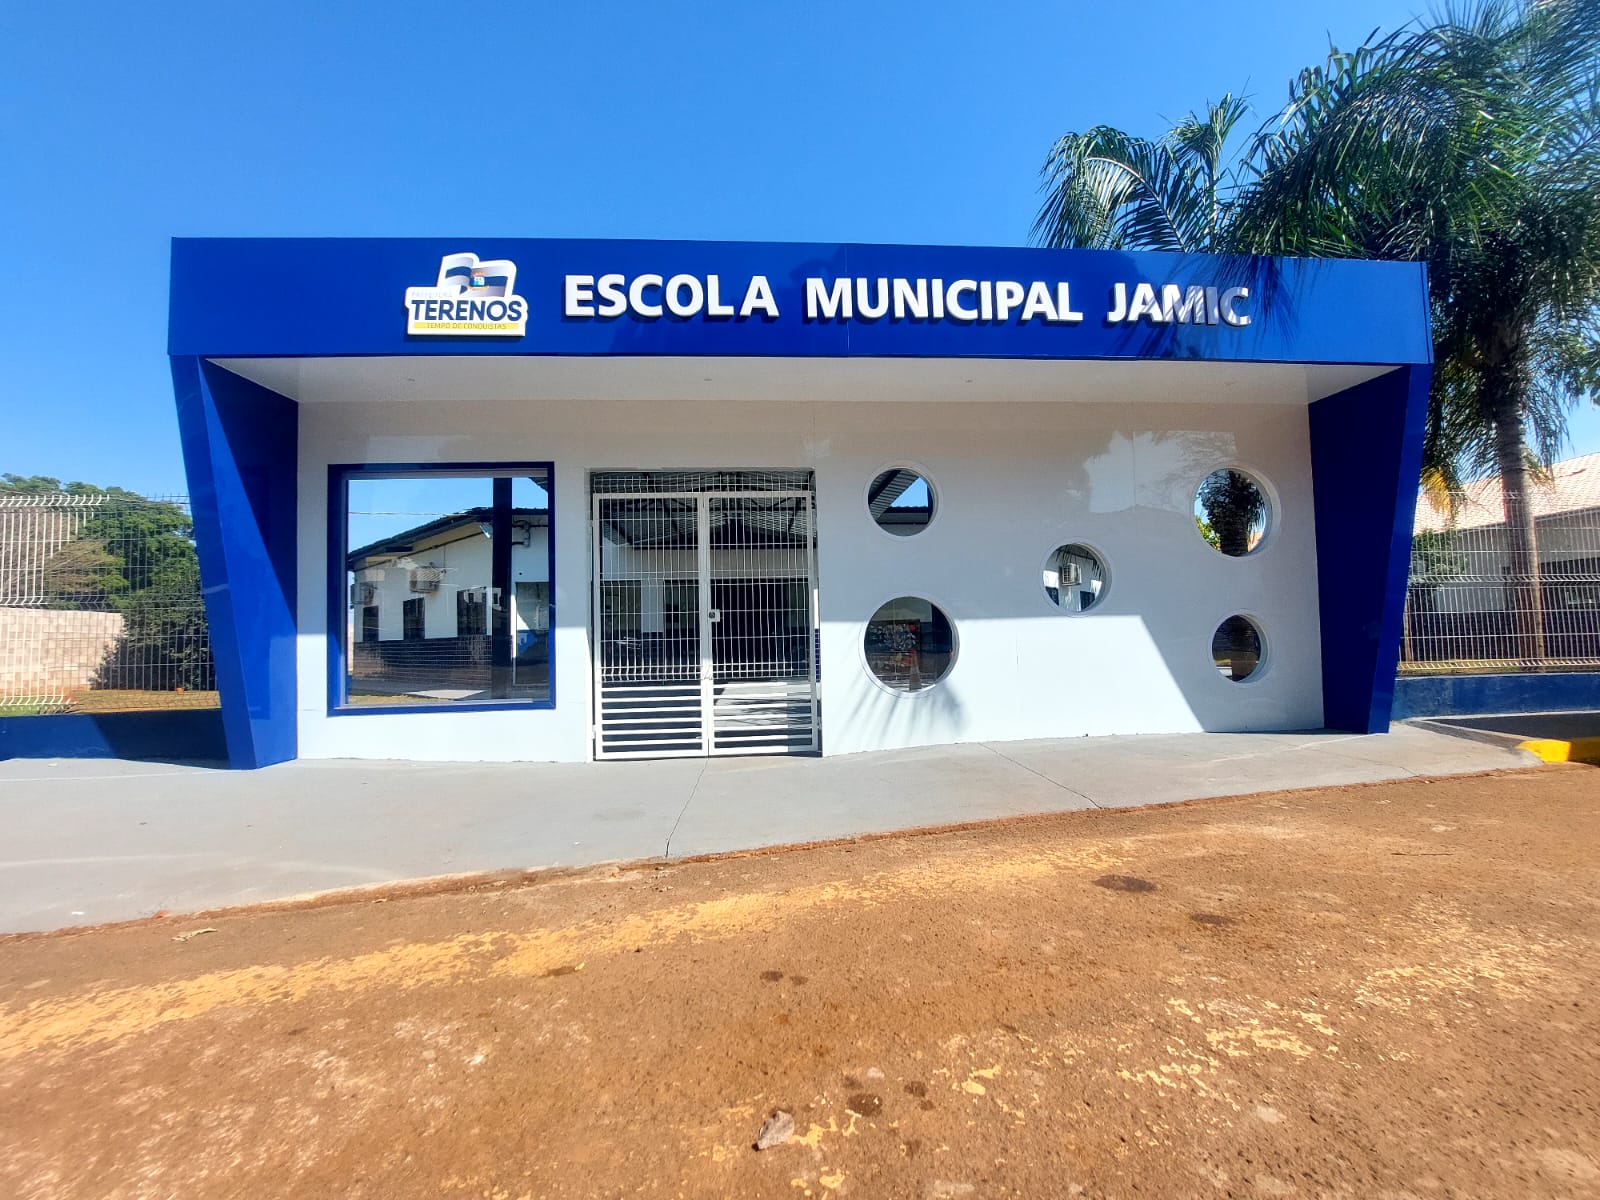 Reforma e Ampliação da Escola Municipal Jamic: Investindo no Futuro da Educação